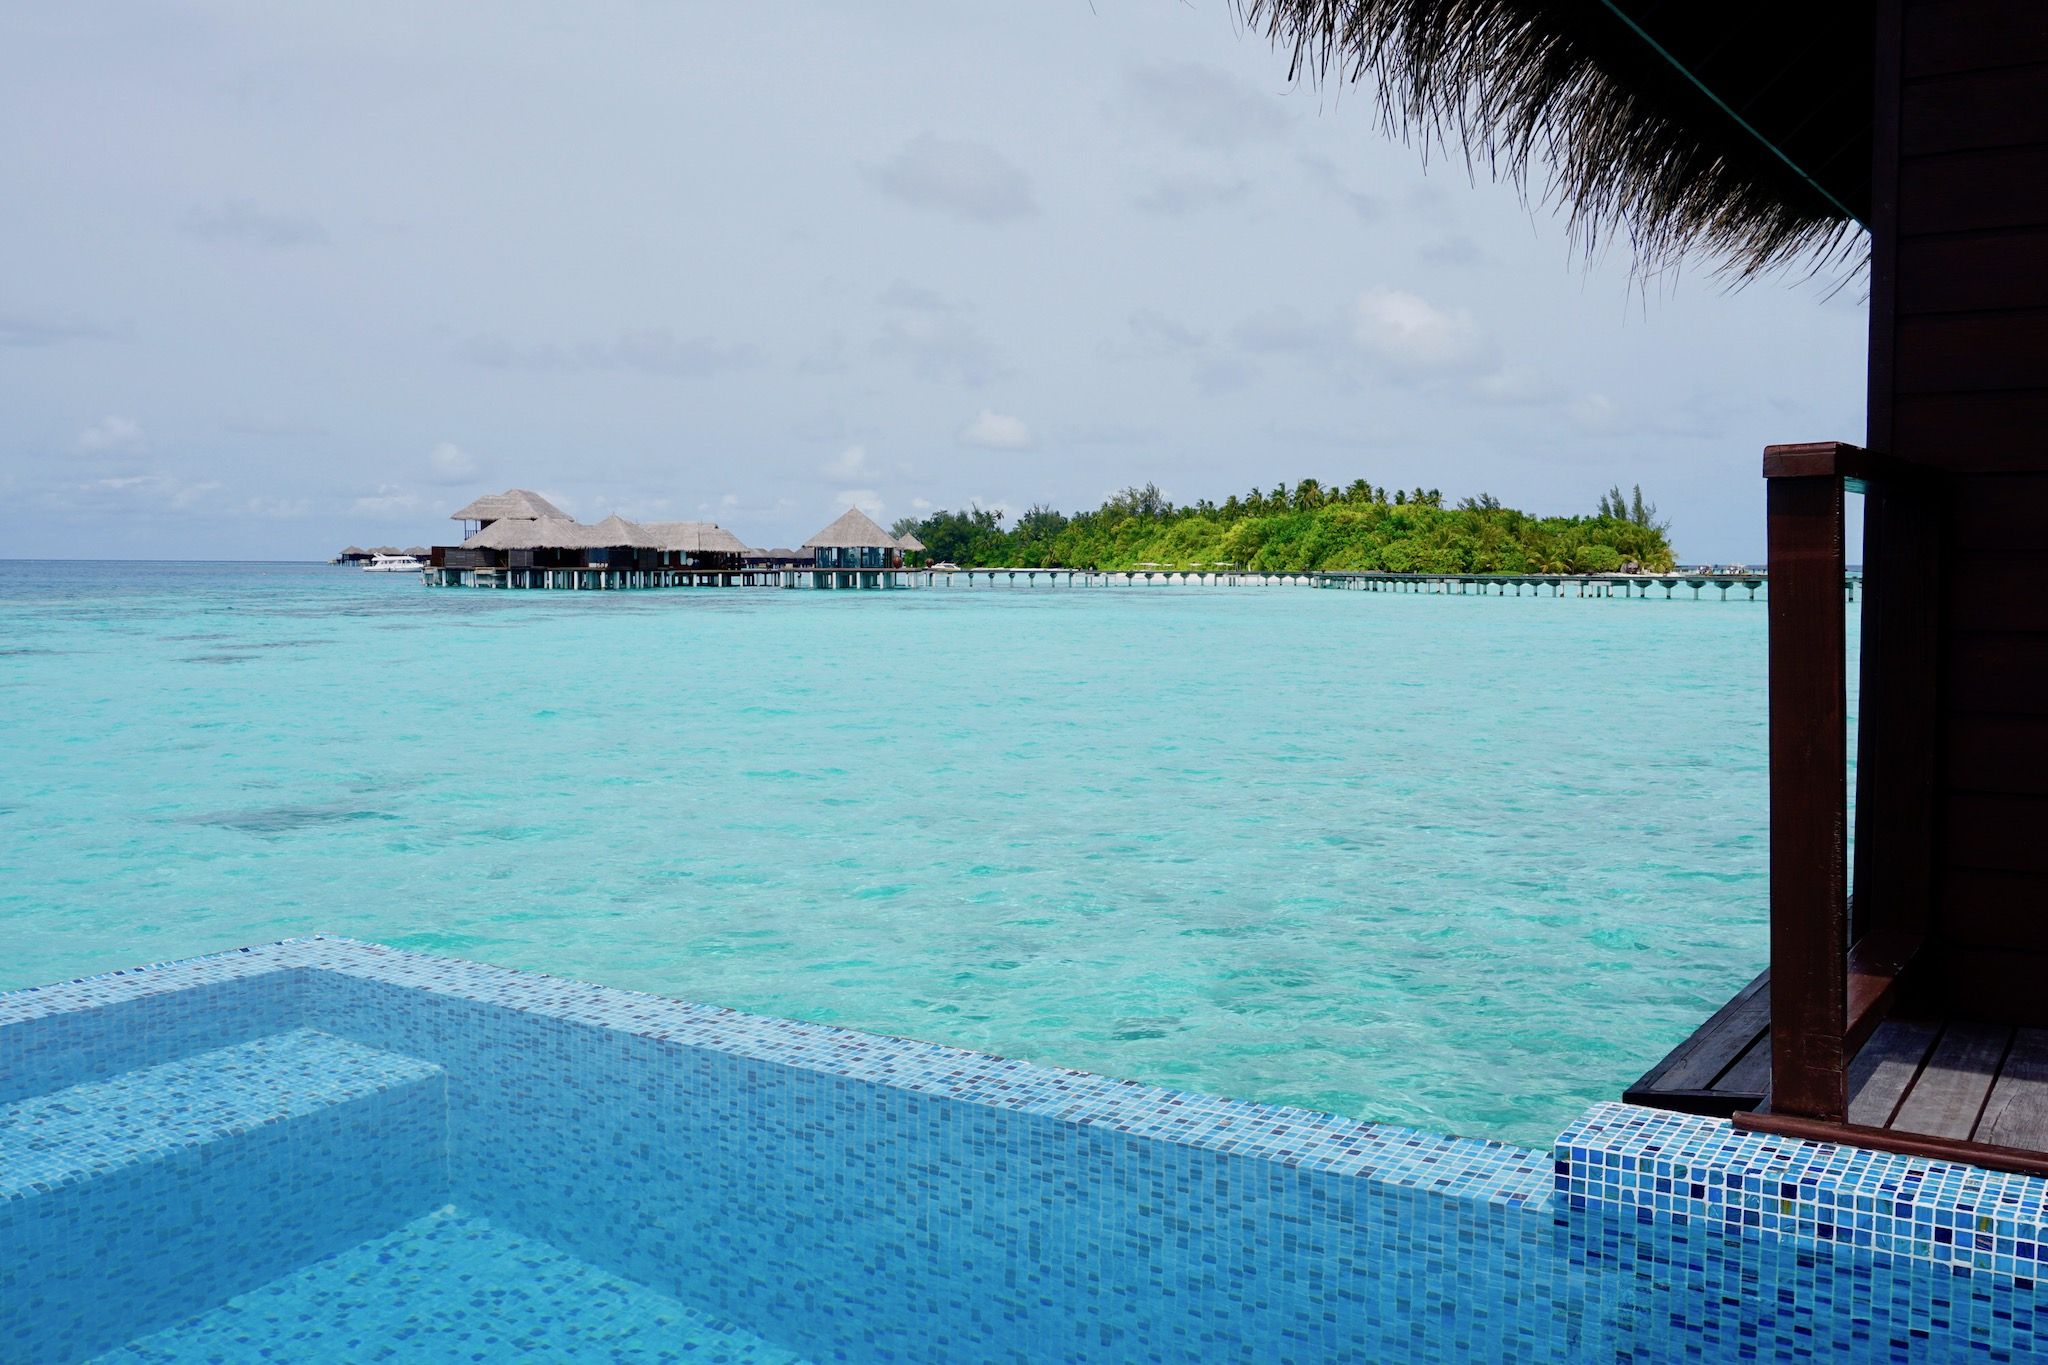 Vous pouvez également profiter de votre propre envie de voyager en vous relaxant sur une île des Maldives. Photo : Sascha Tegtmeyer